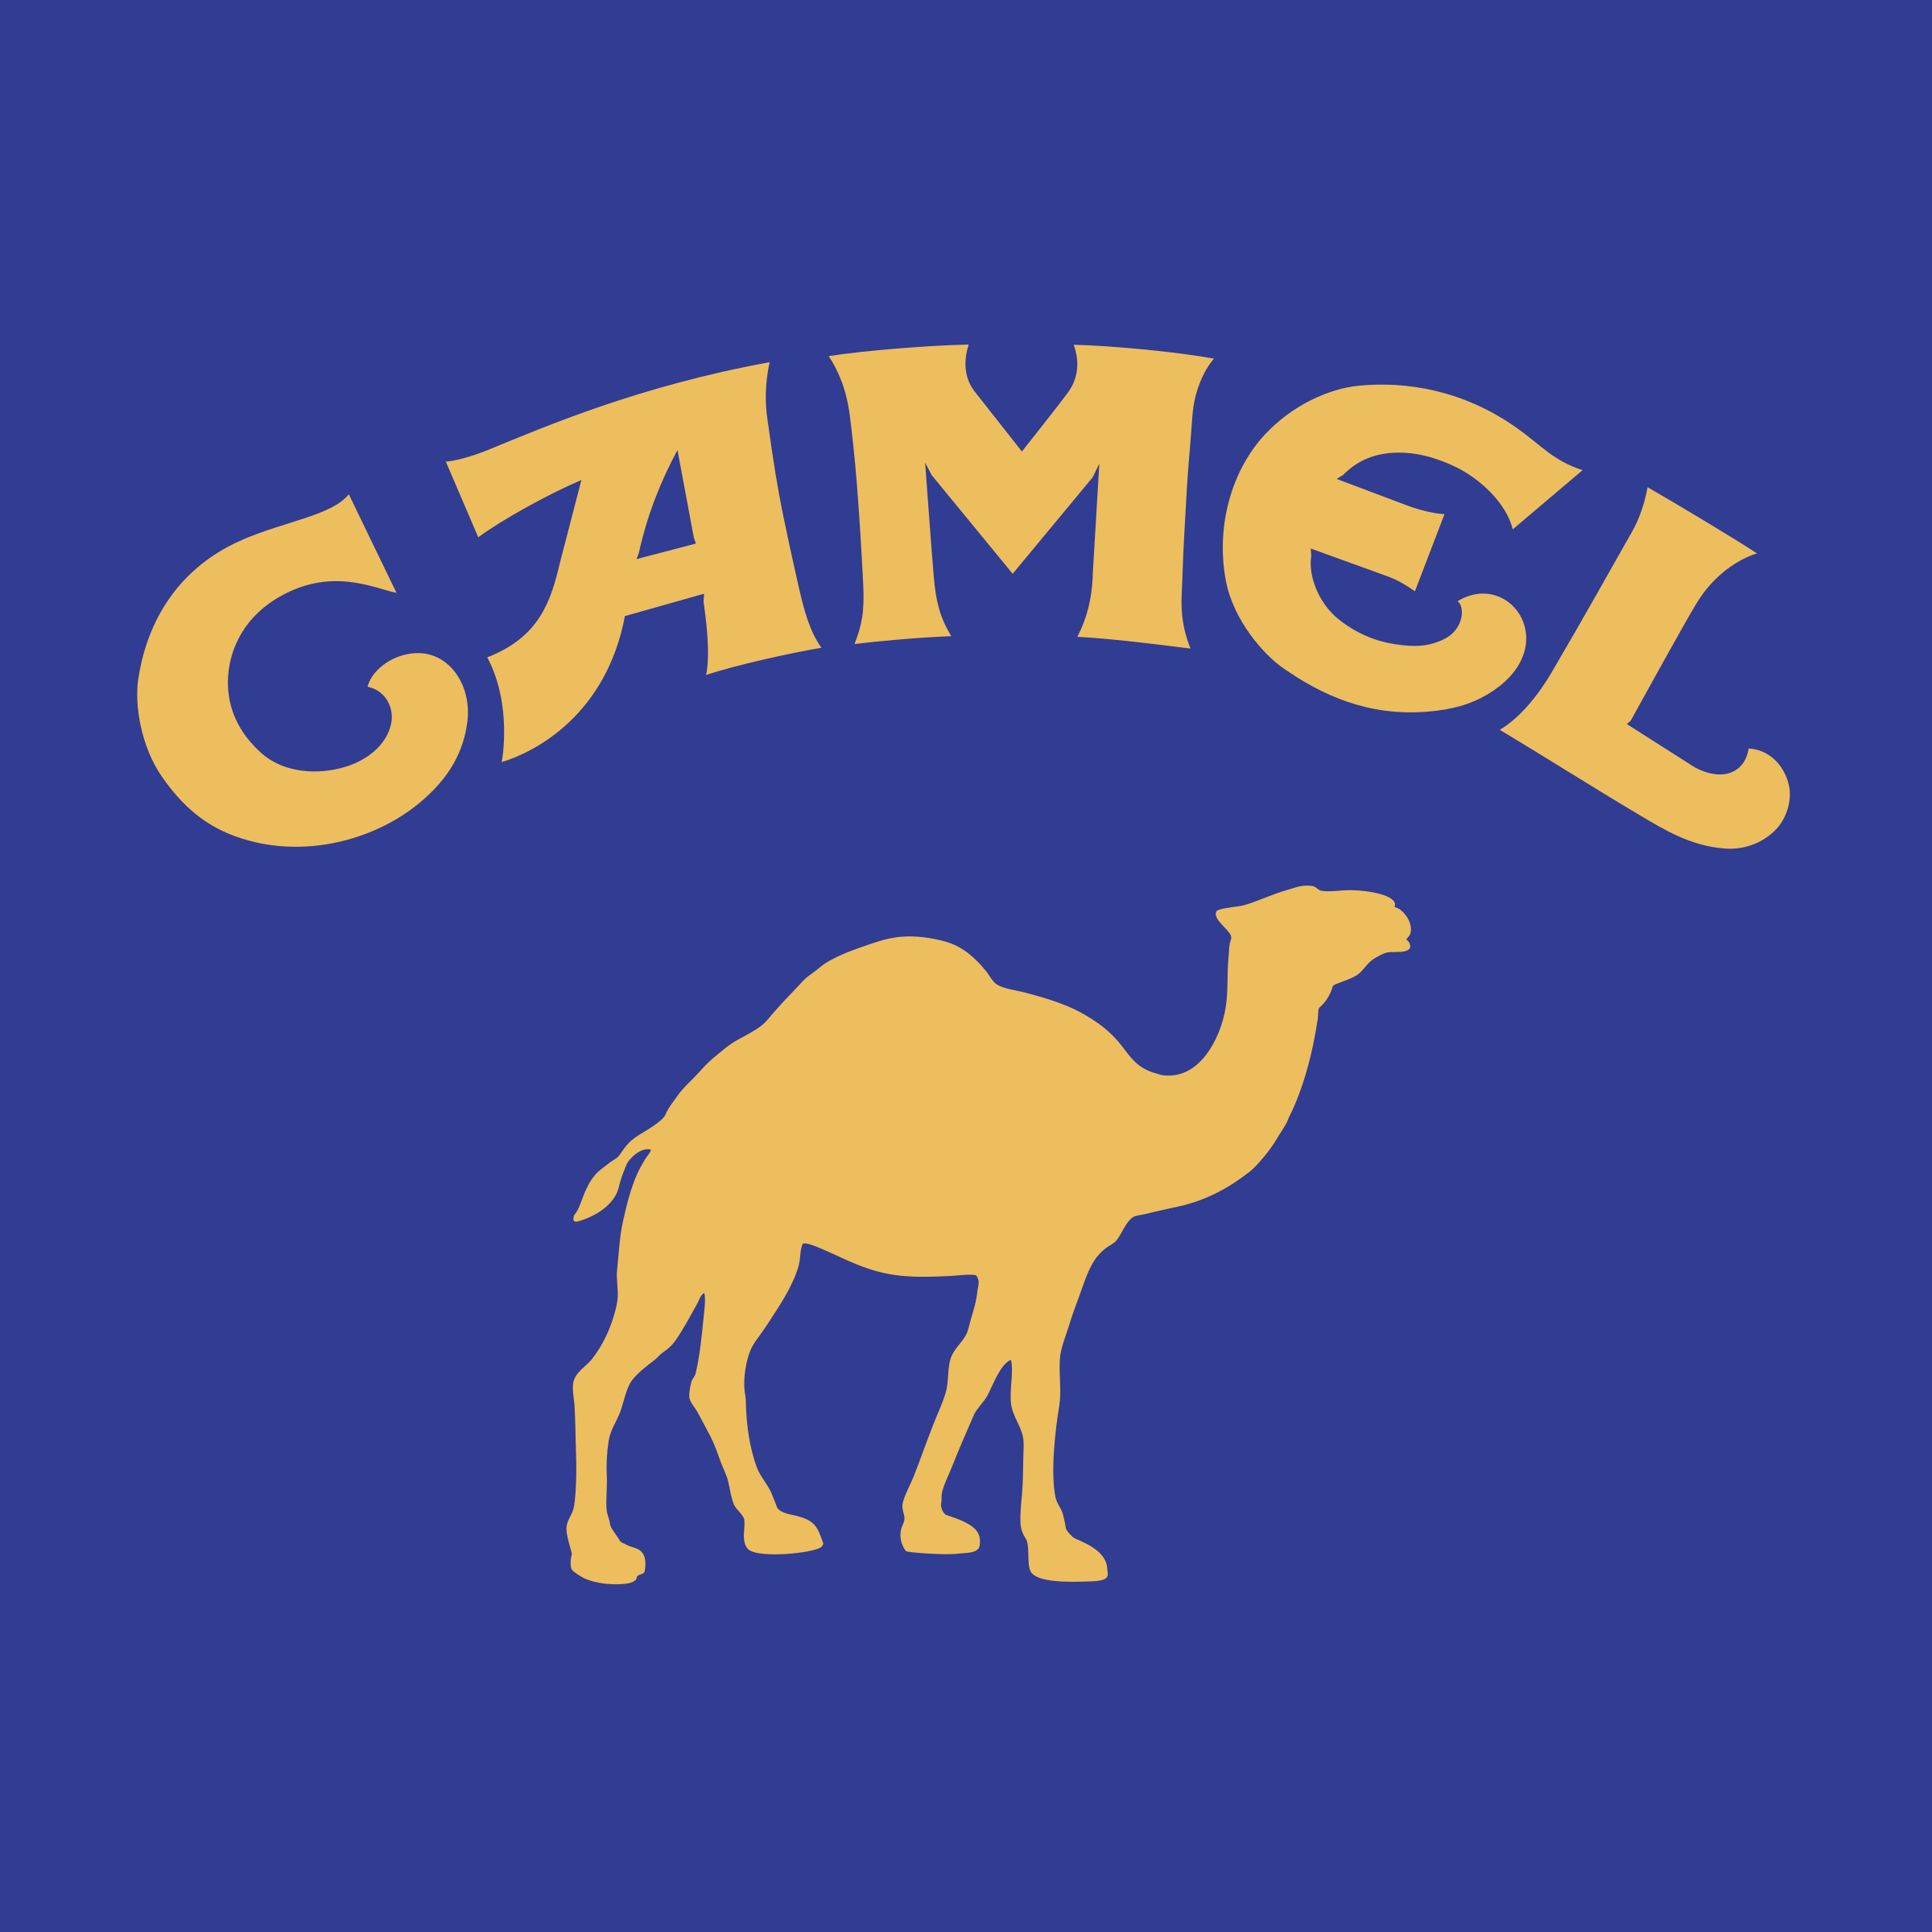 Camel Logo - Camel Logo PNG Transparent & SVG Vector